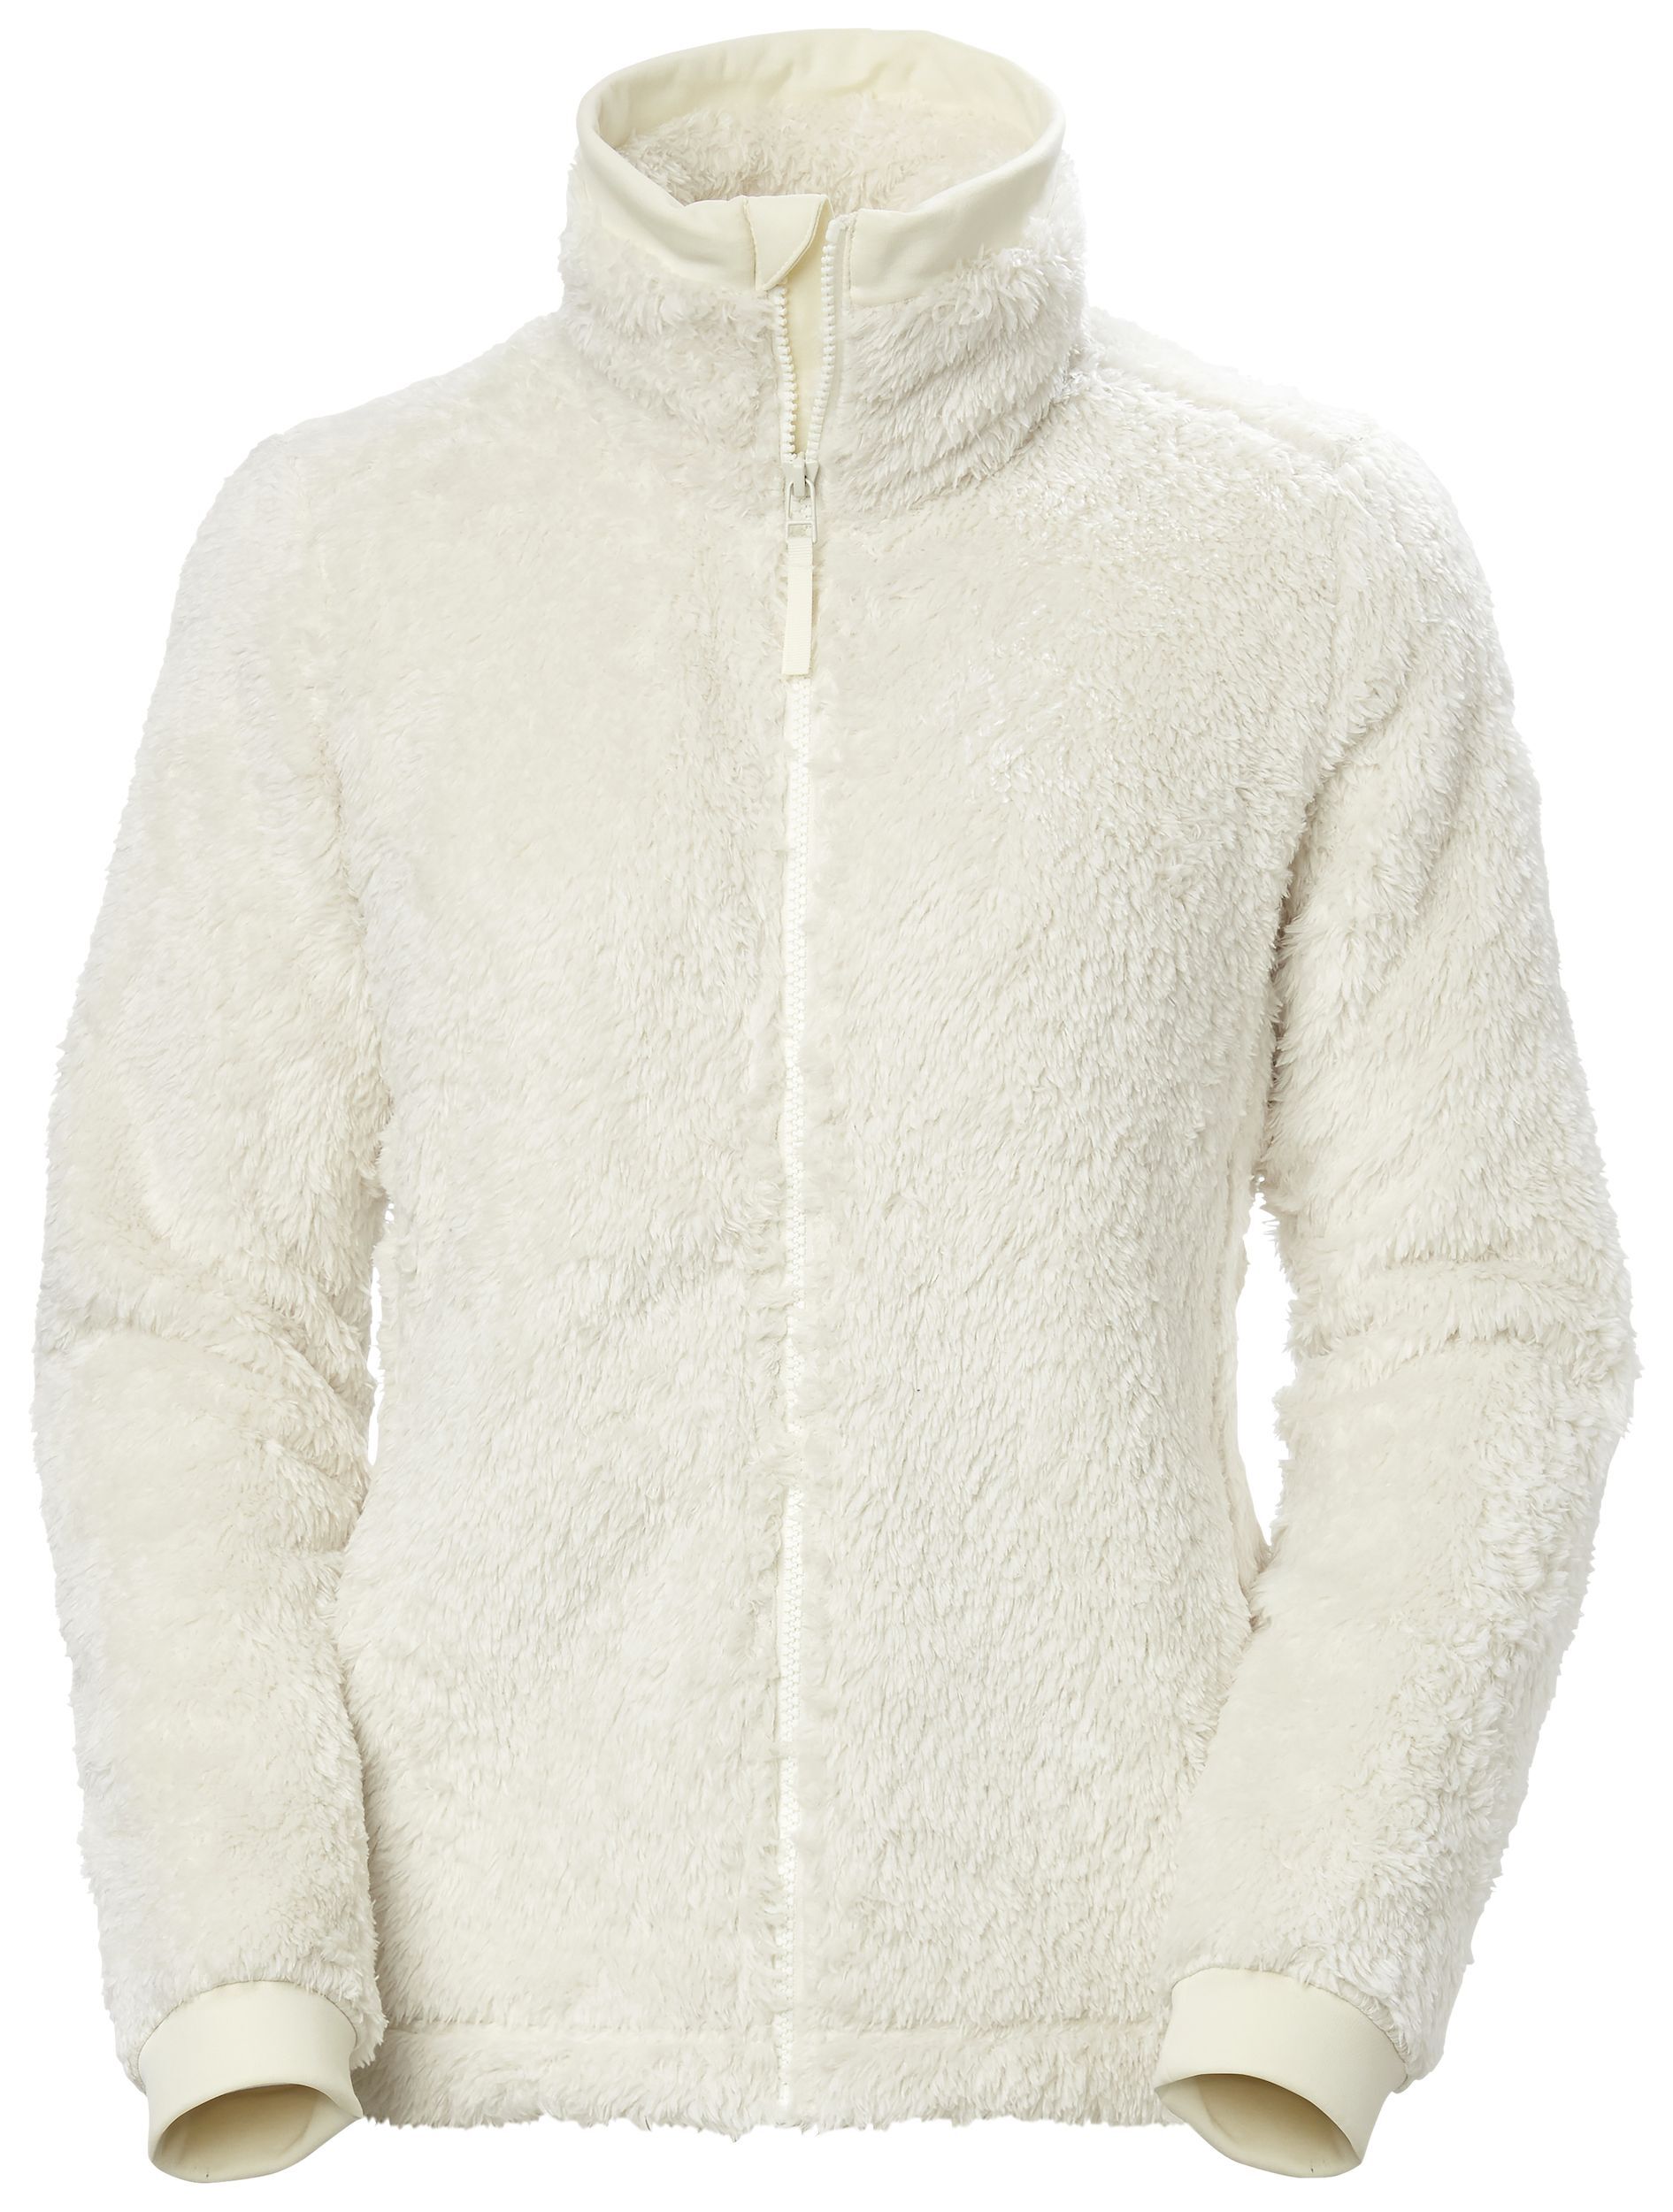 Helly Hansen Precious Fleece Jacket 2.0 - Giacca in pile - Donna